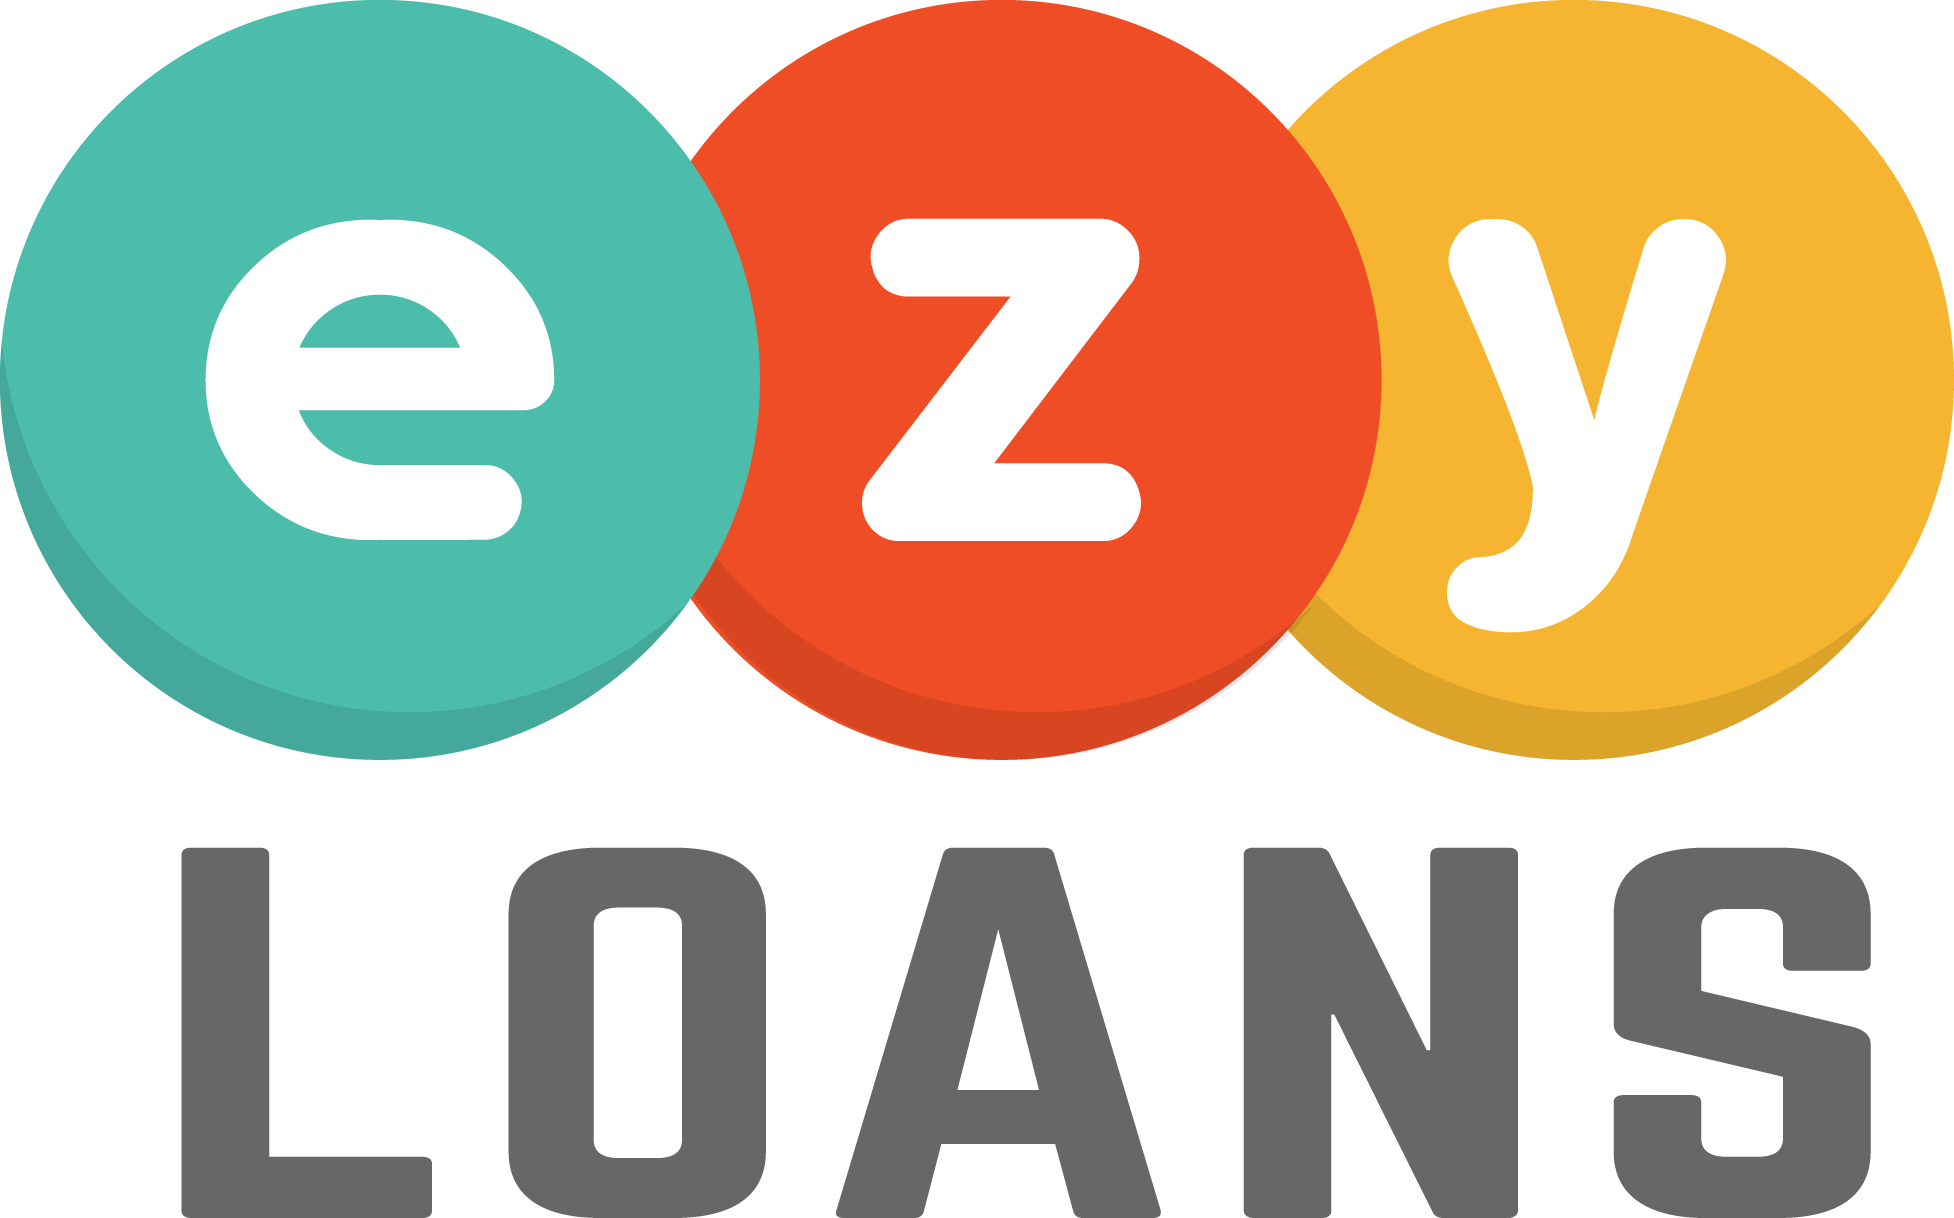 Ezy Logo - Apply for Loan